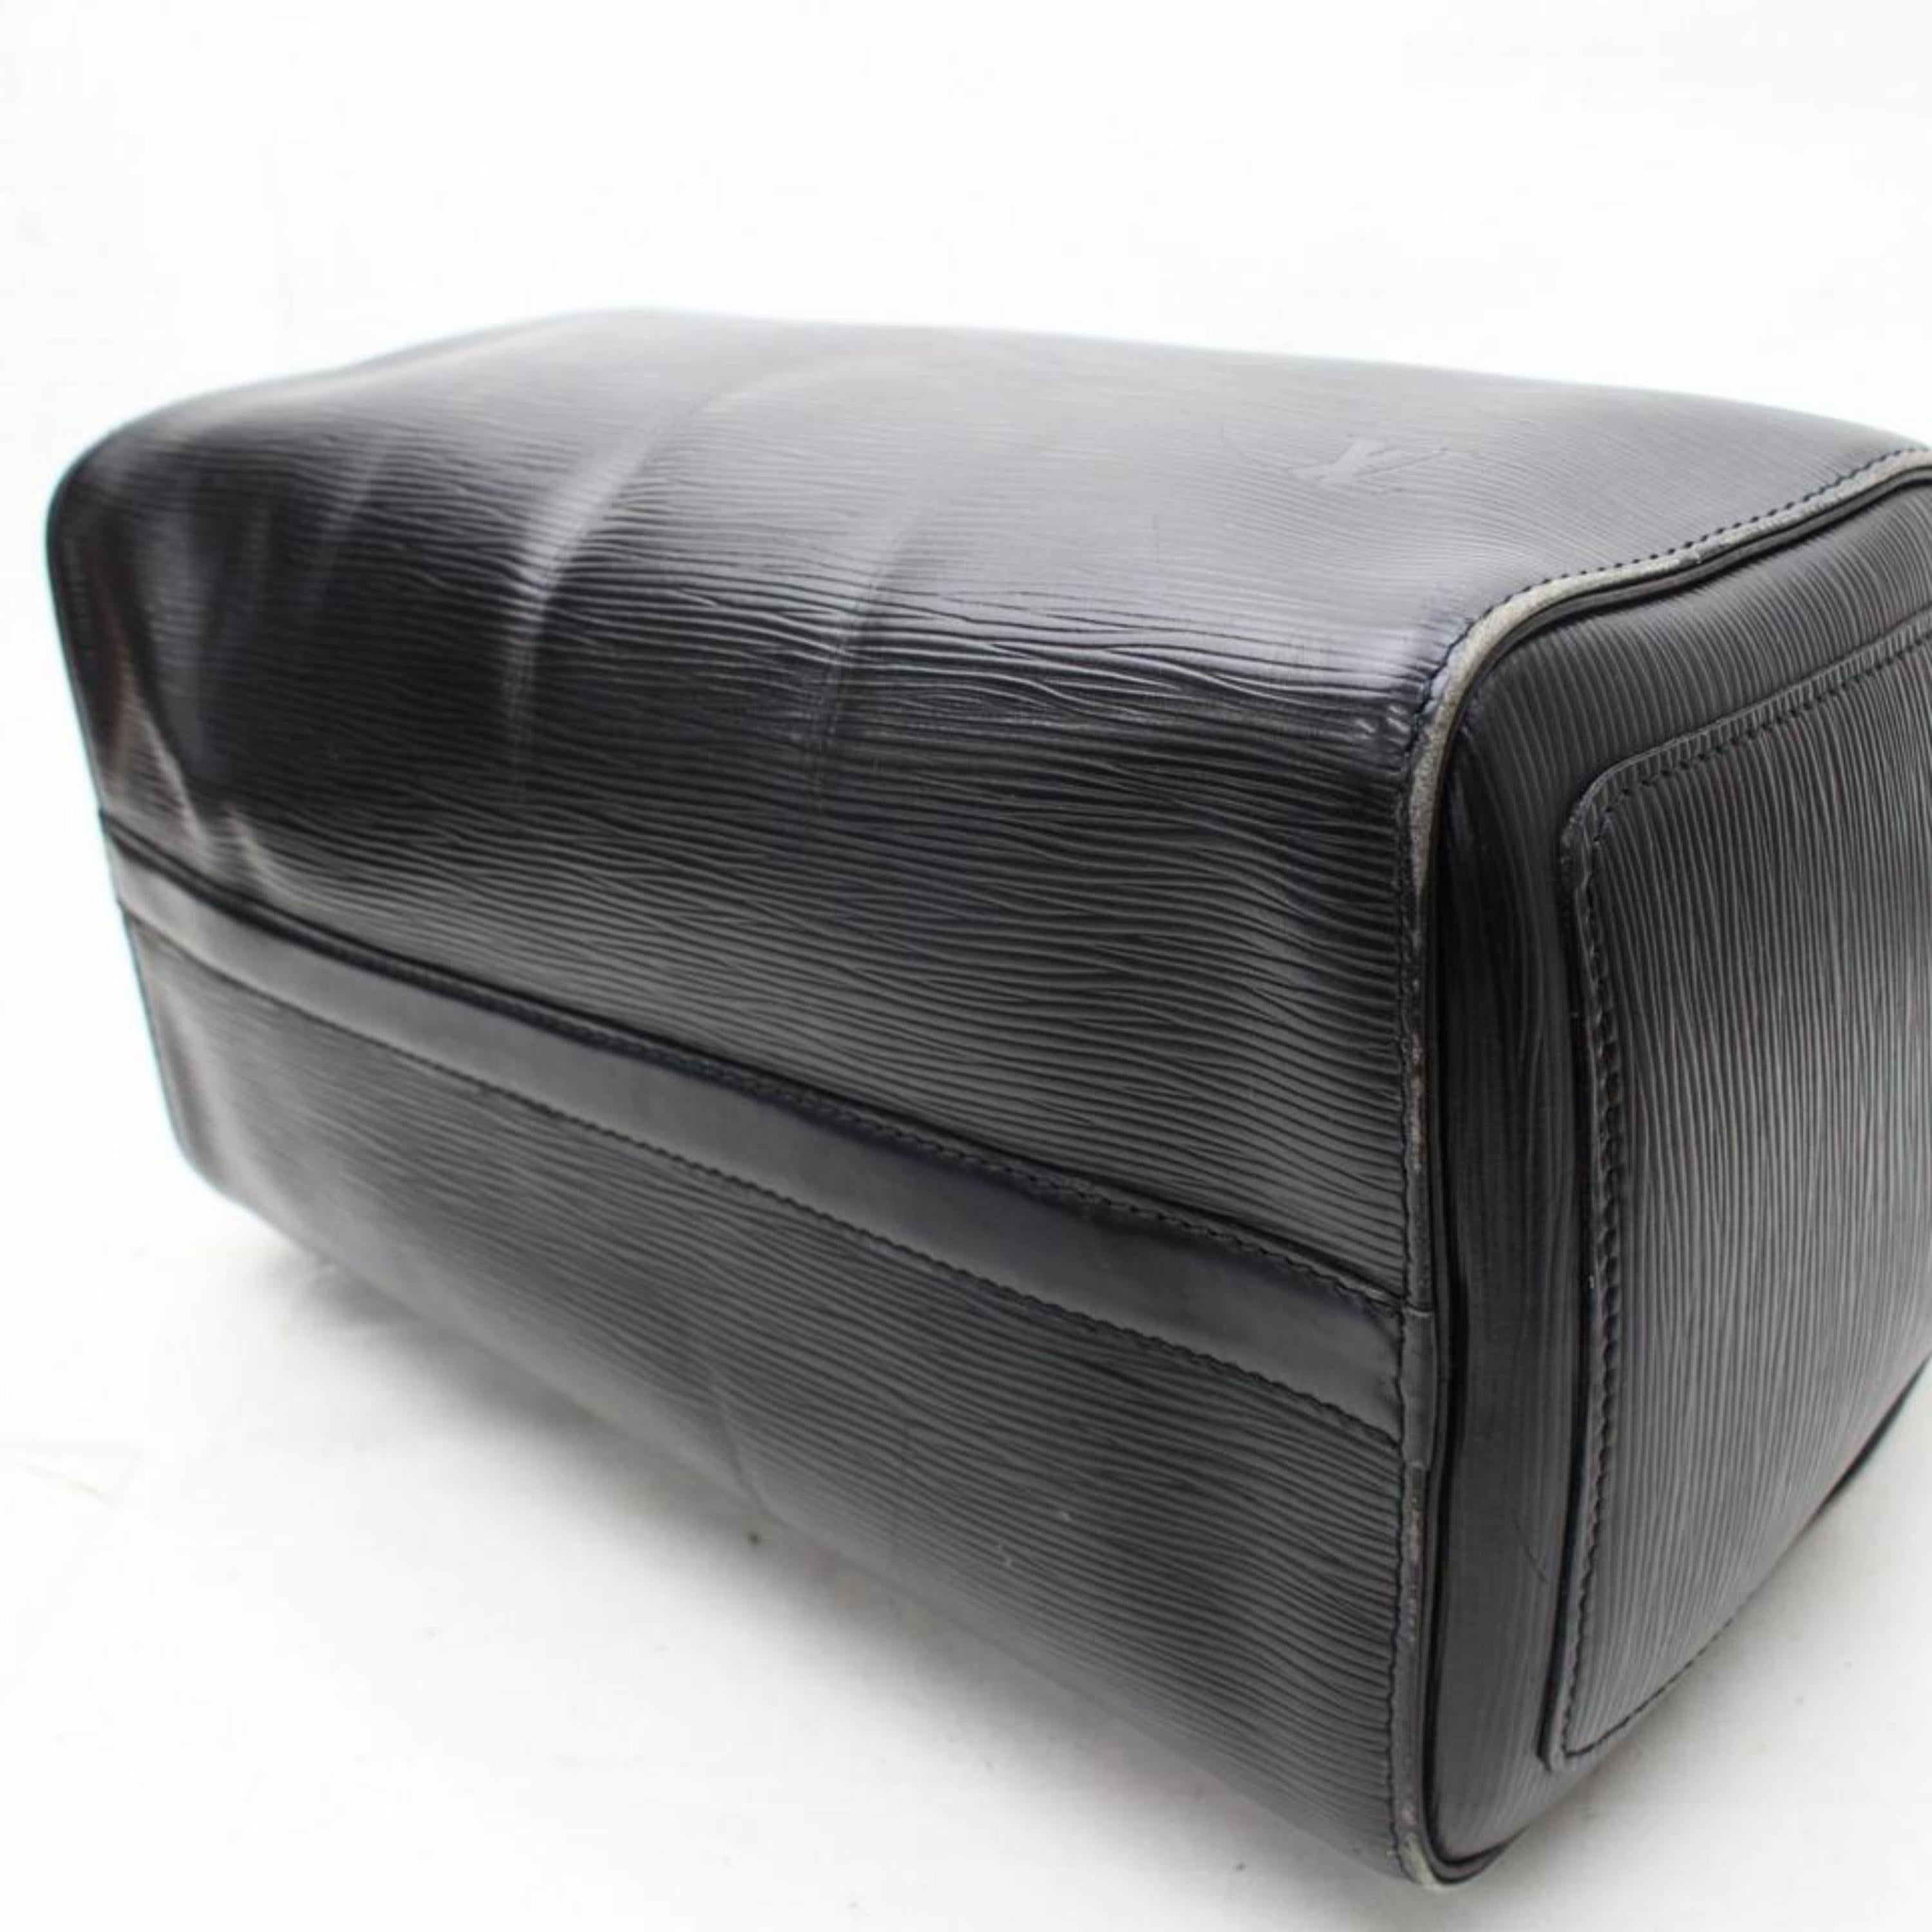 Louis Vuitton Speedy Epi Noir 30 867755 Black Leather Satchel For Sale 8